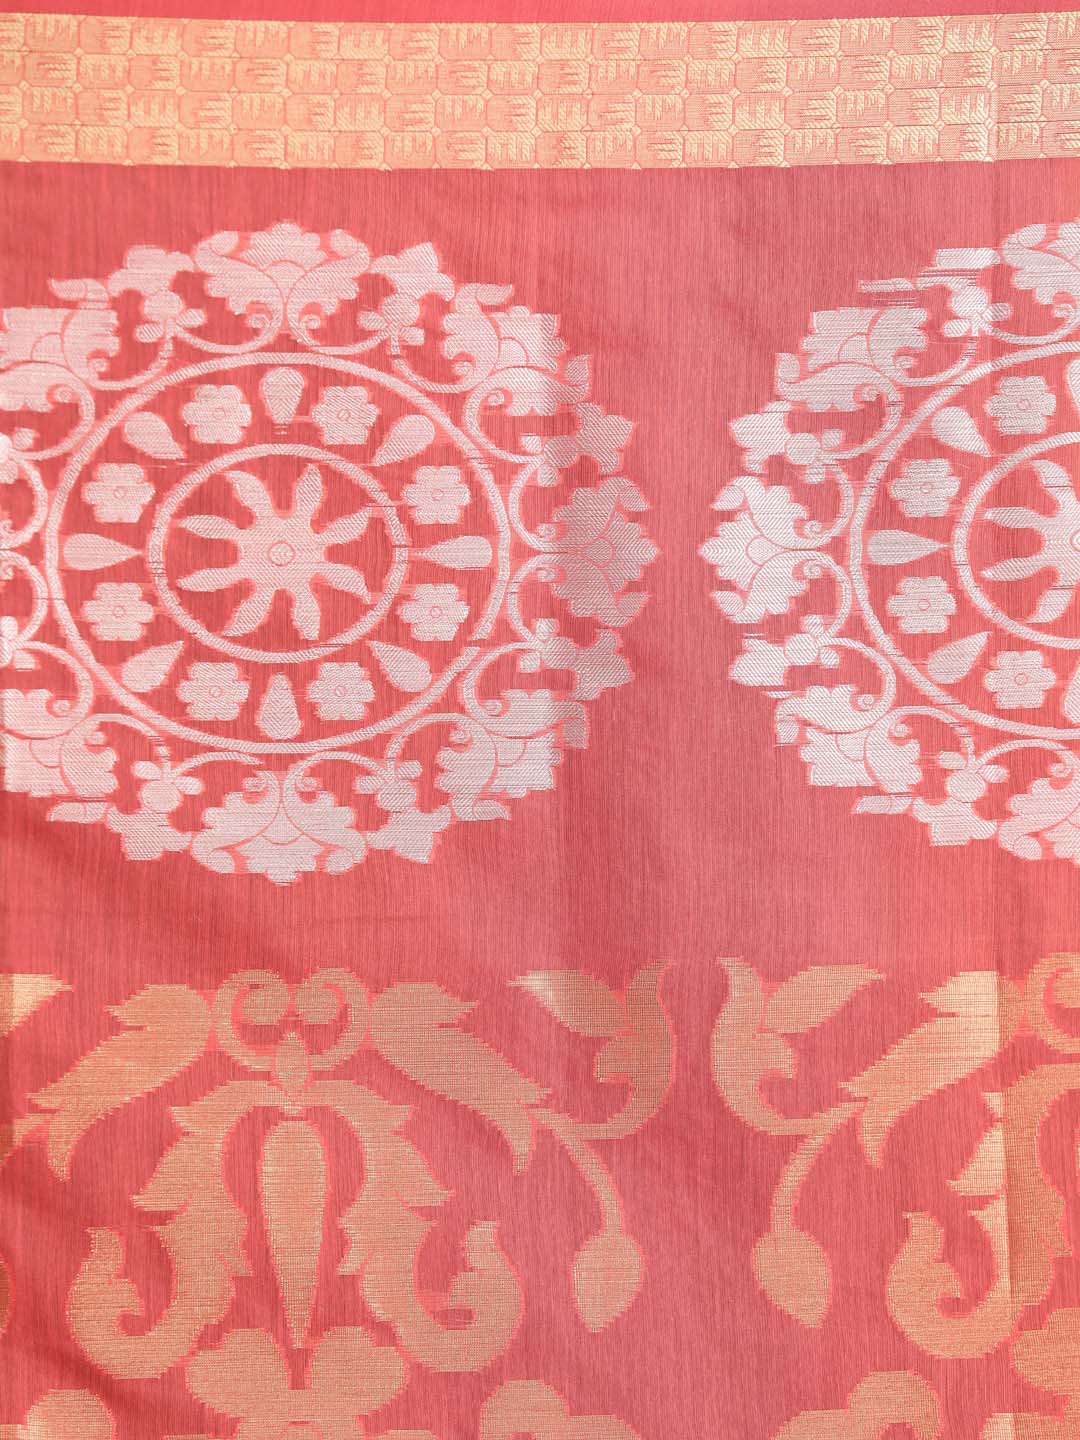 Indethnic Banarasi Coral Woven Design Festive Wear Saree - Saree Detail View